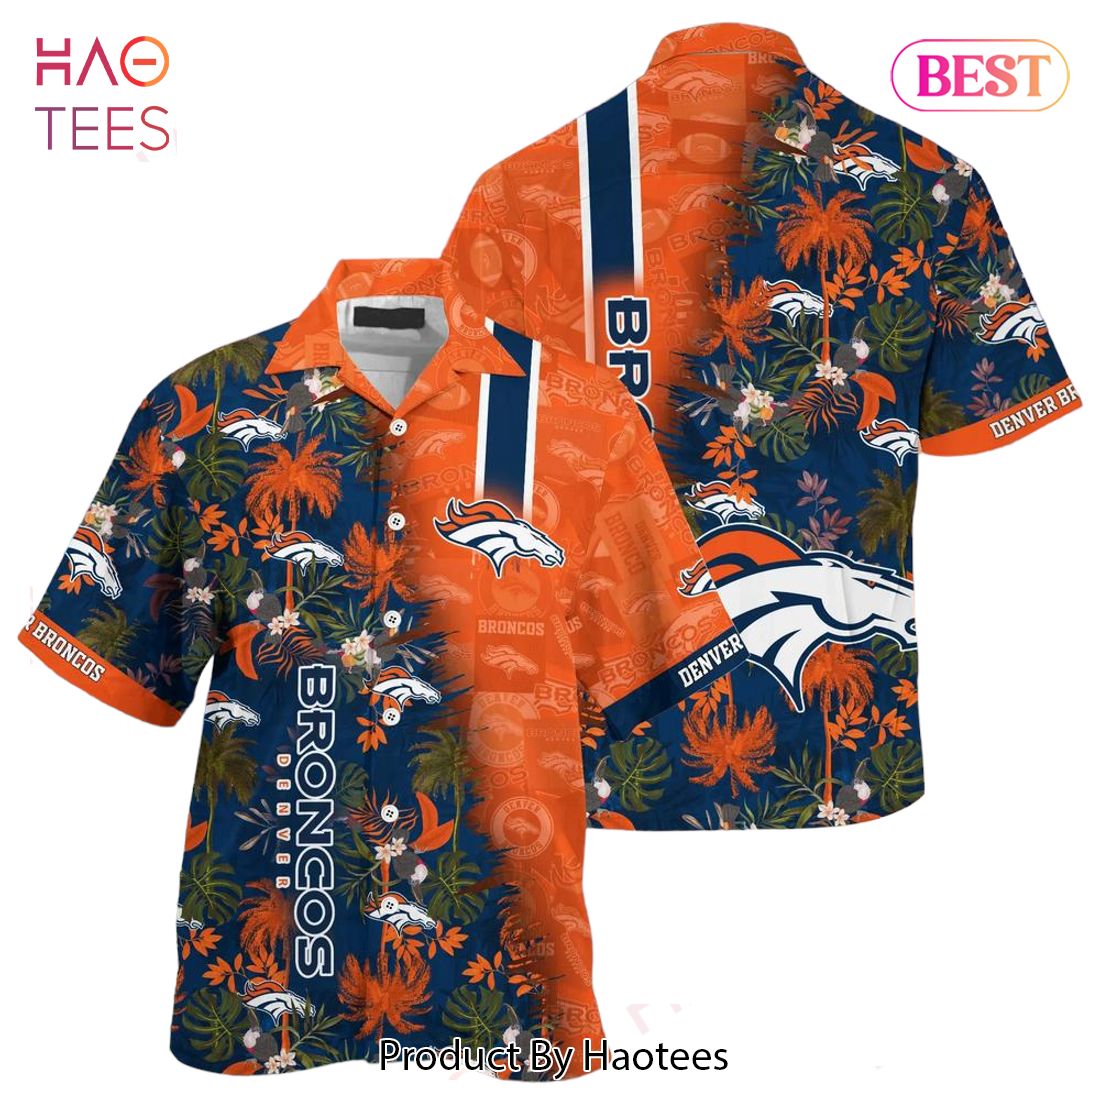 HOT TREND Denver Broncos NFL Team Football Beach Shirt Summer Button Down Hawaiian Shirt Fan Ever